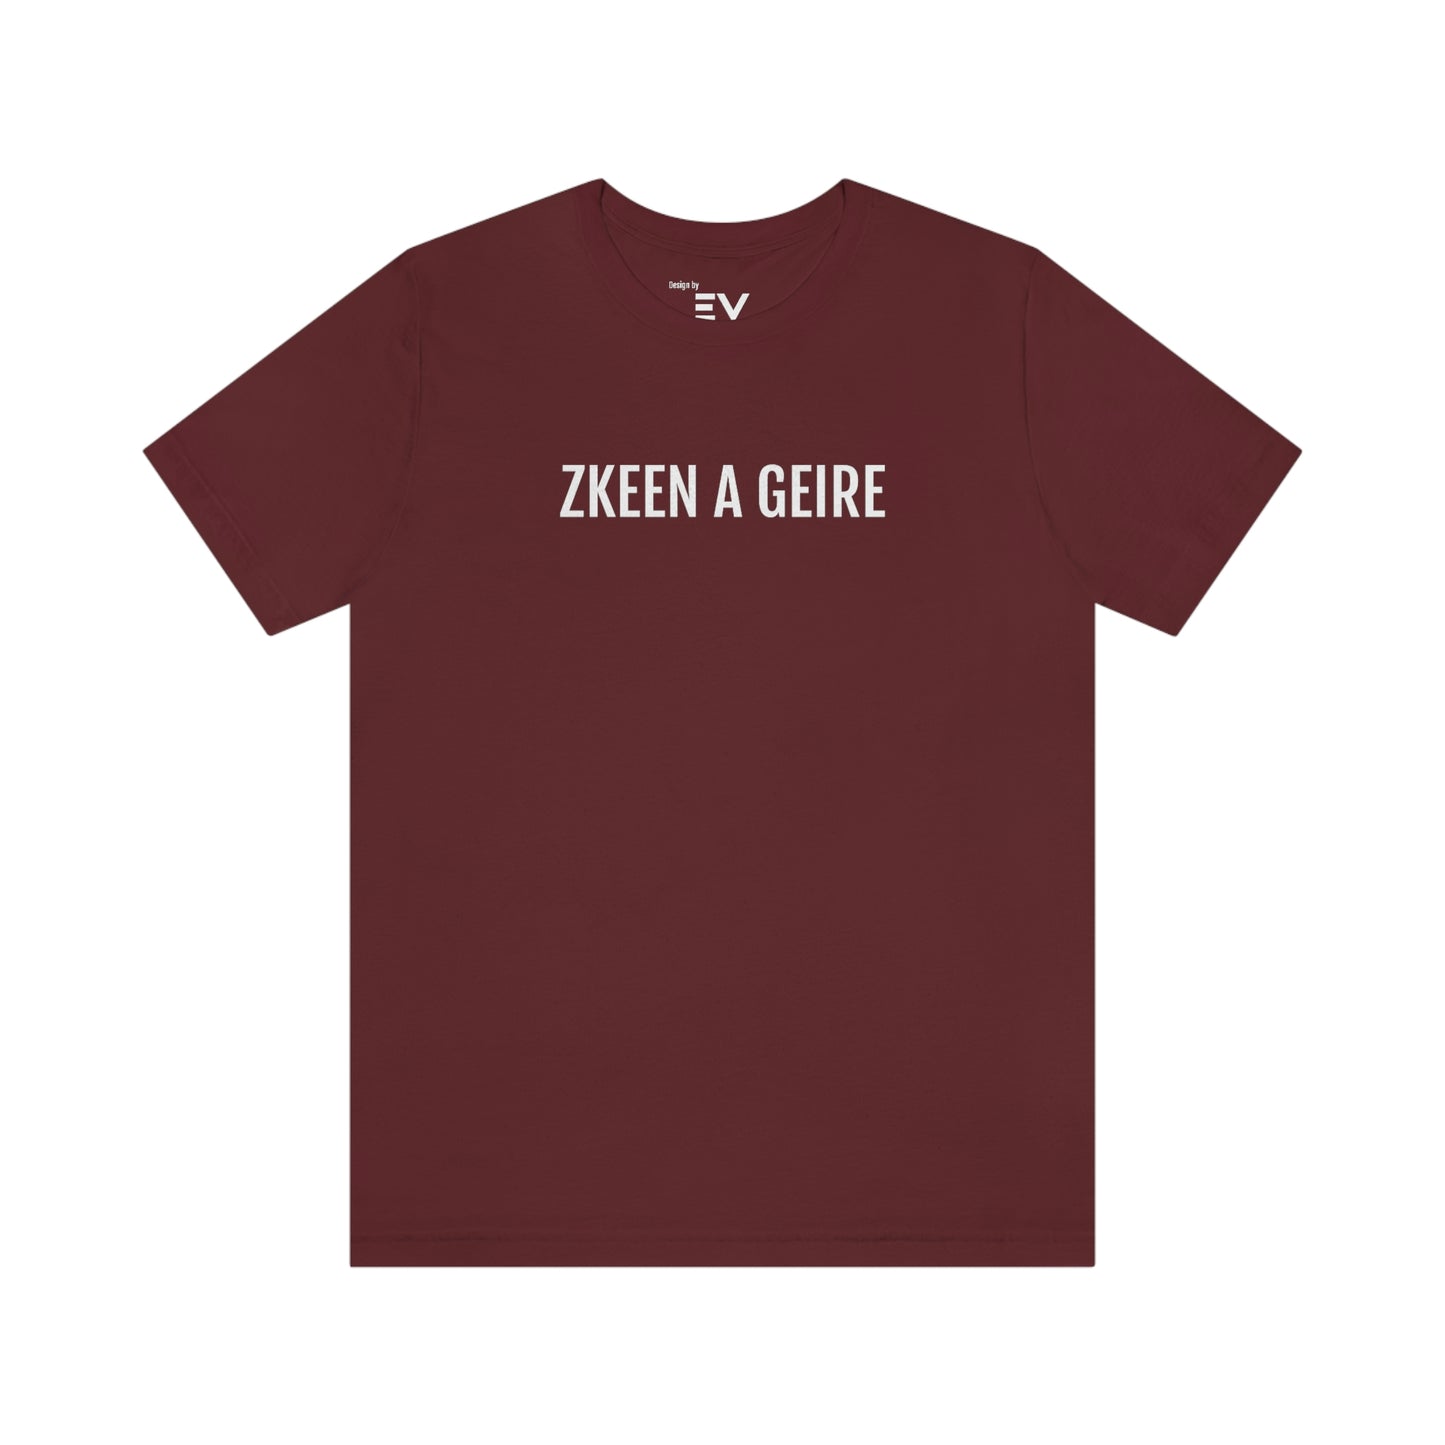 KZEEN A GEIRE | Unisex T-Shirt uit Brussel